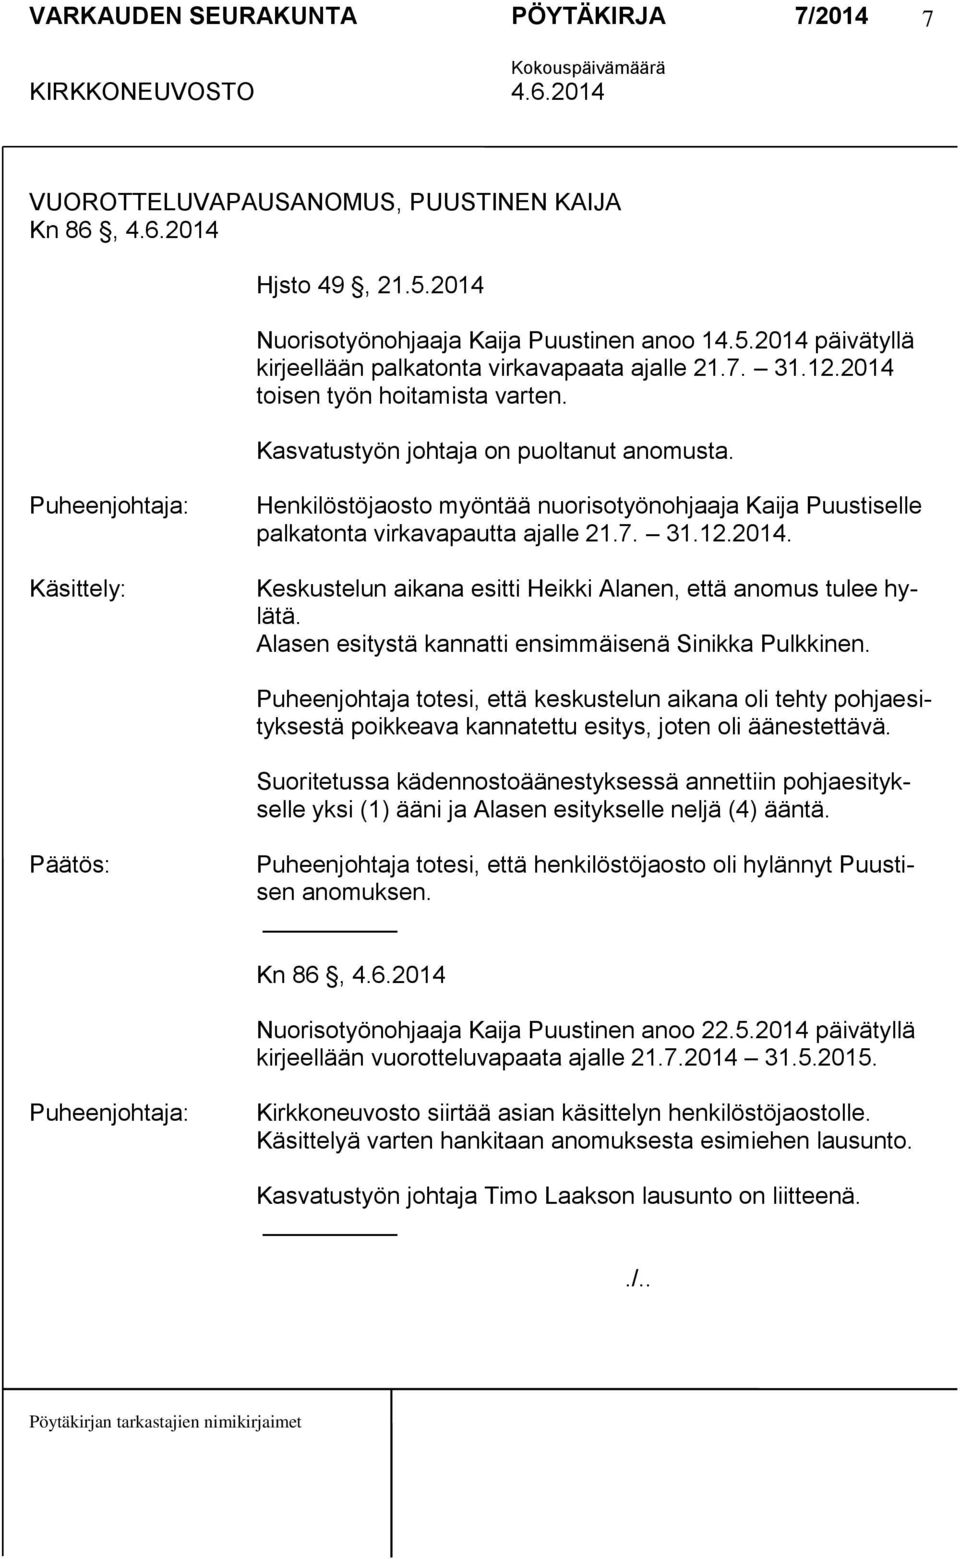 2014. Keskustelun aikana esitti Heikki Alanen, että anomus tulee hylätä. Alasen esitystä kannatti ensimmäisenä Sinikka Pulkkinen.